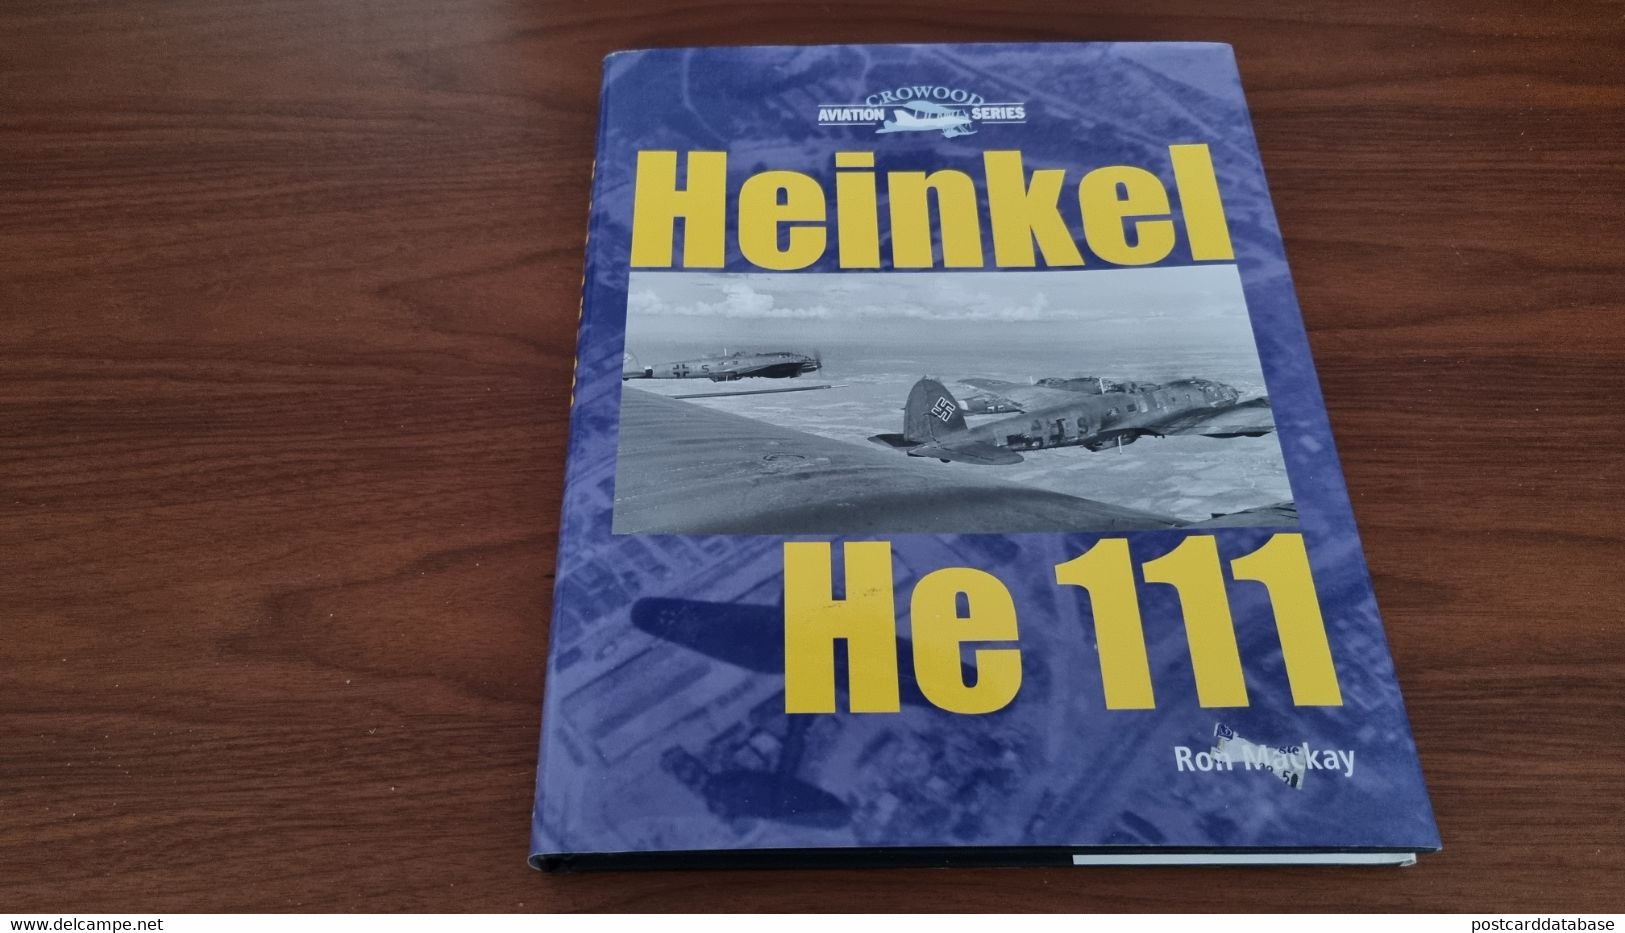 Heinkel He 111 - Aviation Series - Ron Mackay - Oorlog 1939-45